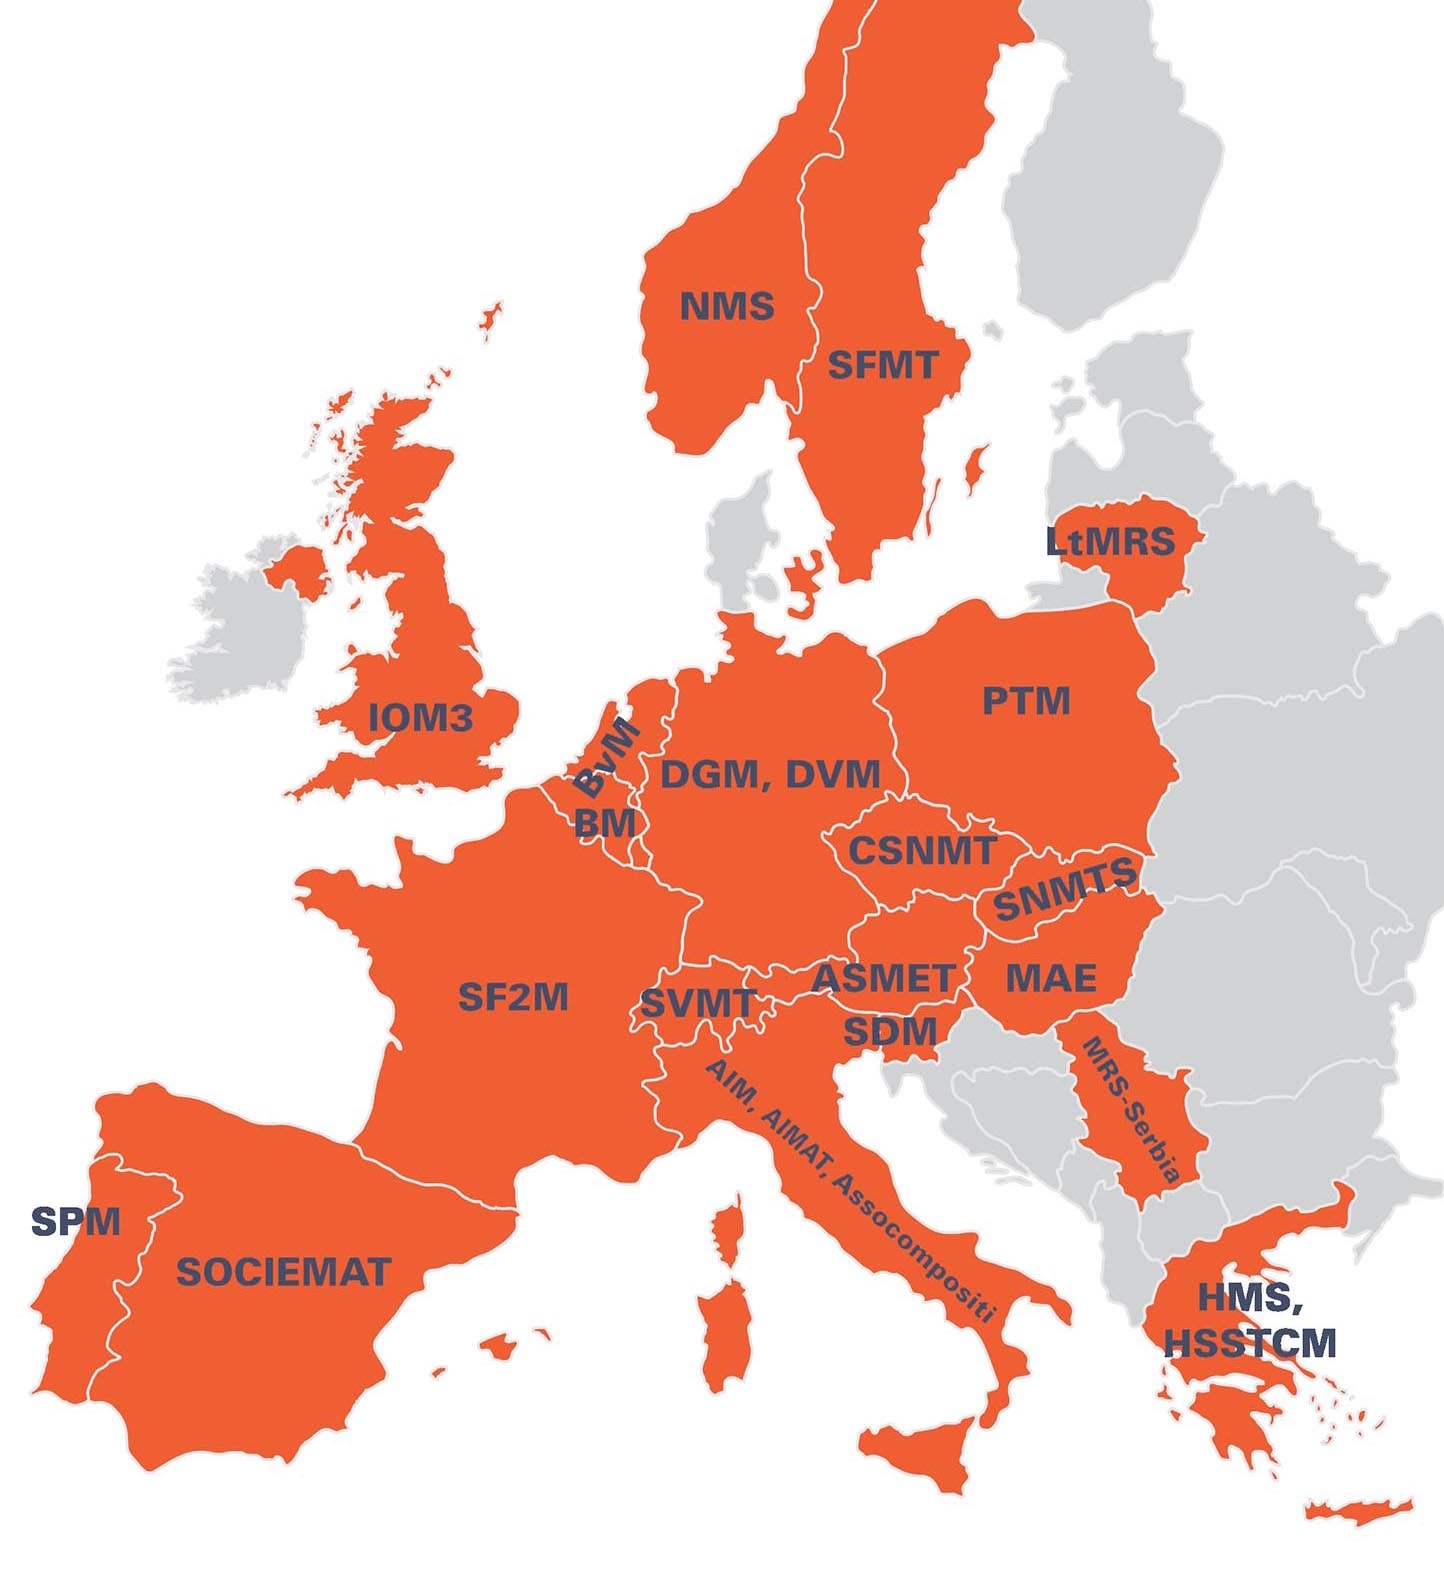 Map of FEMS members in Europe